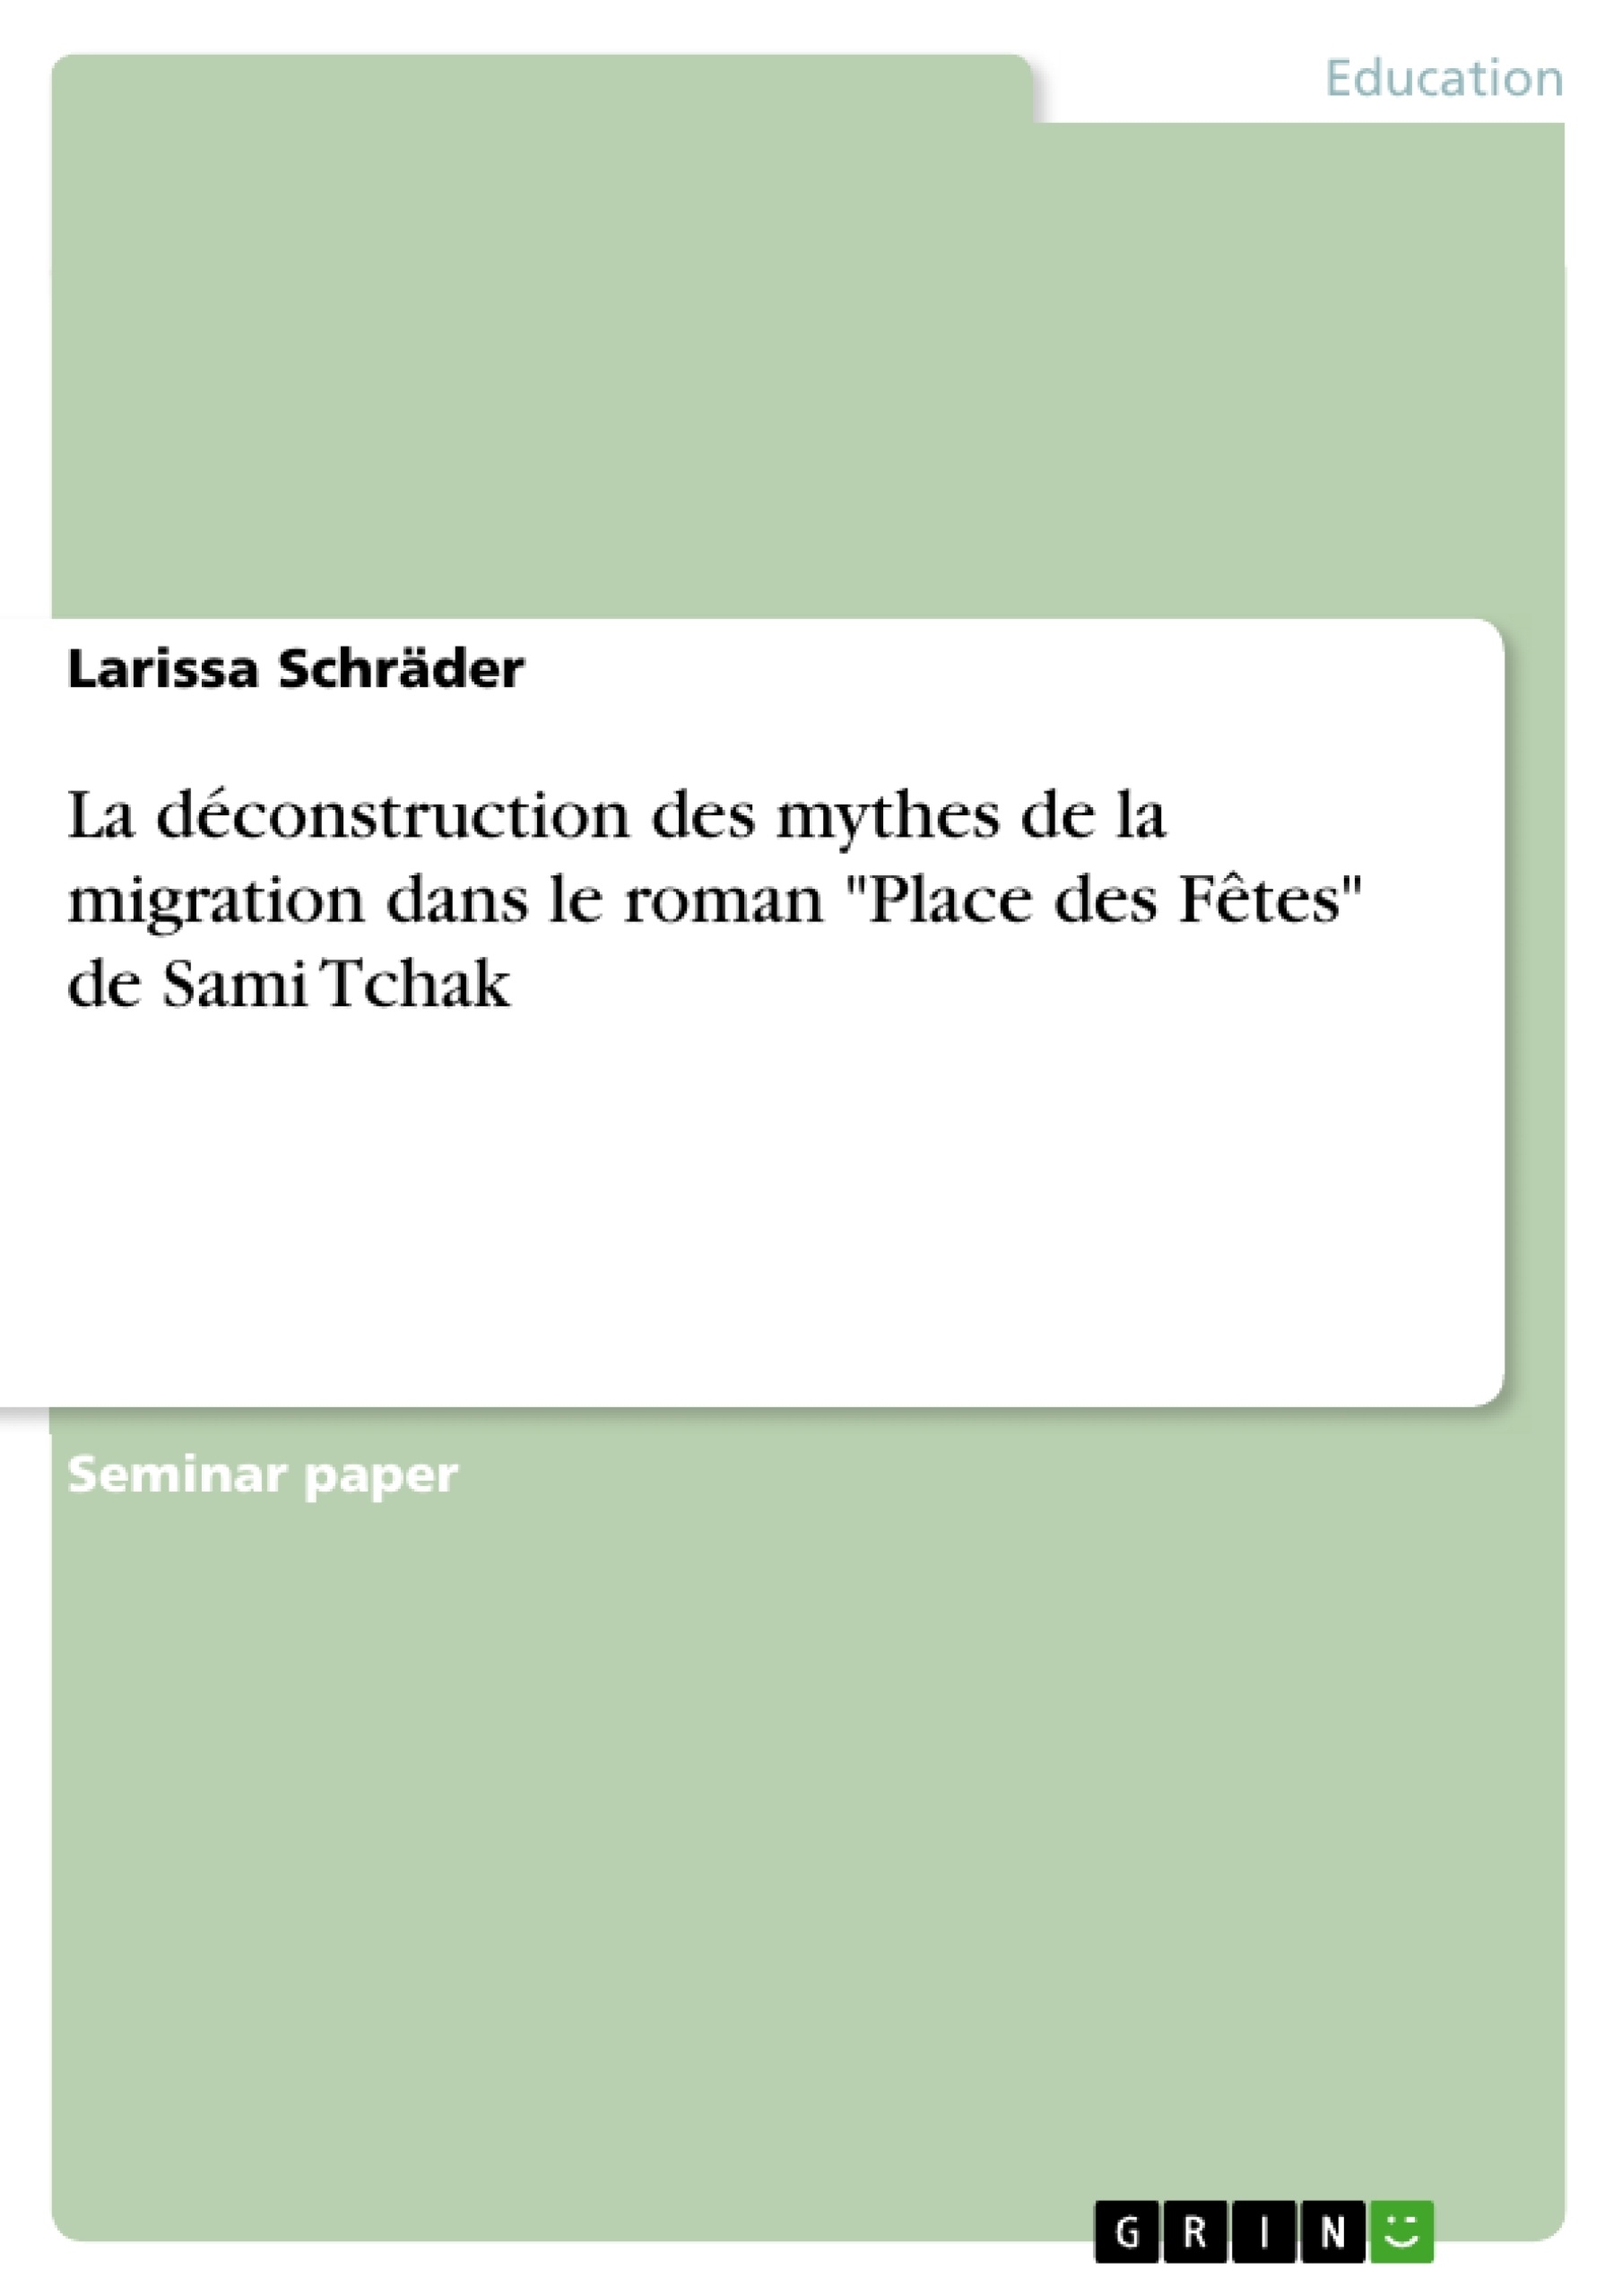 Titre: La déconstruction des mythes de la migration dans le roman "Place des Fêtes" de Sami Tchak